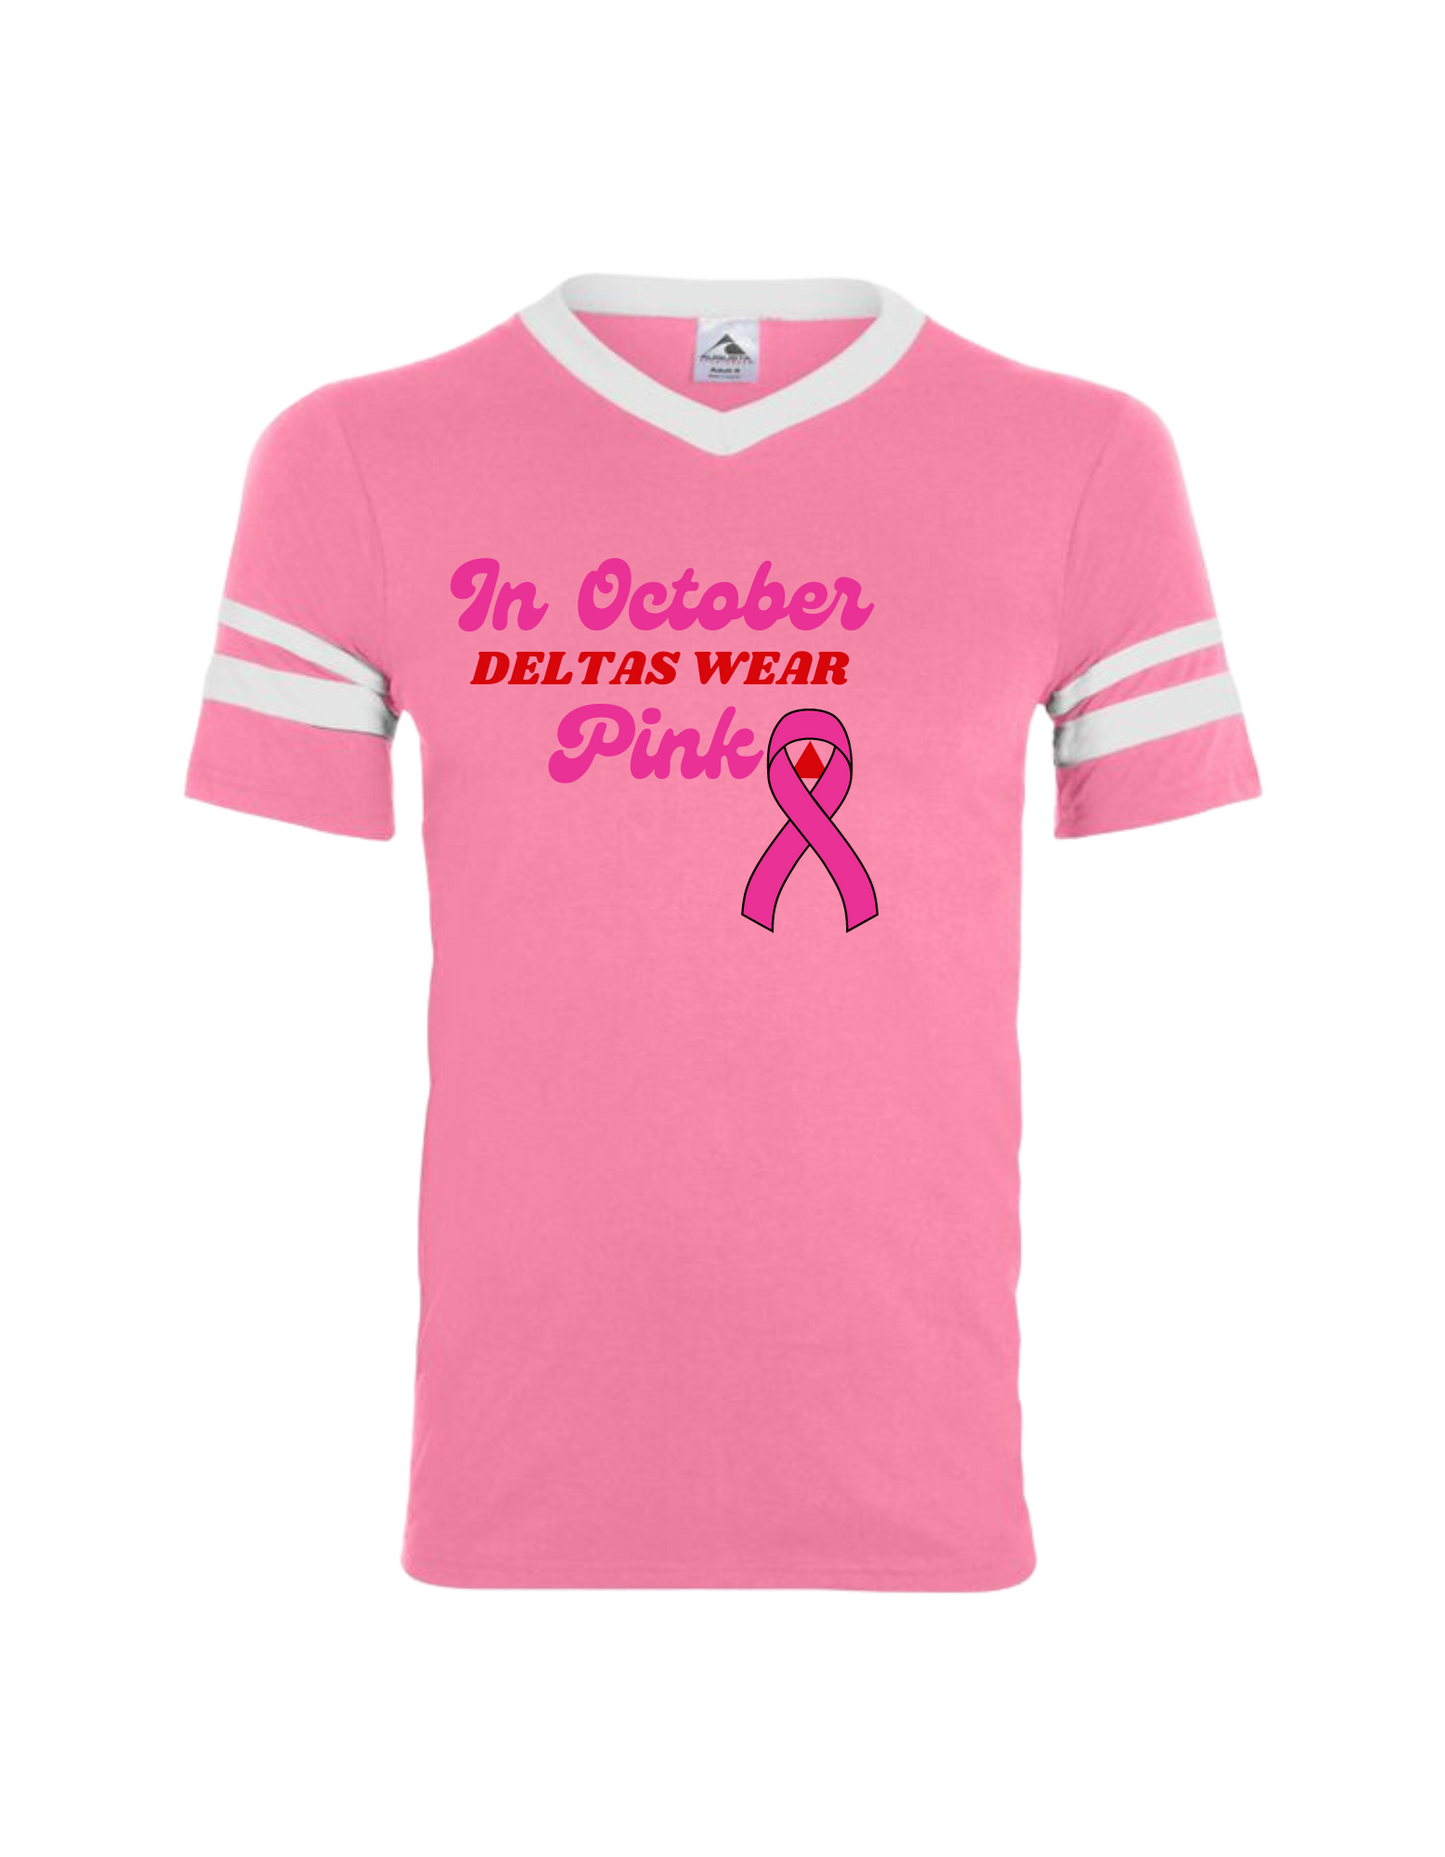 Pink color contrast Deltas wear pink in October awareness tshirt